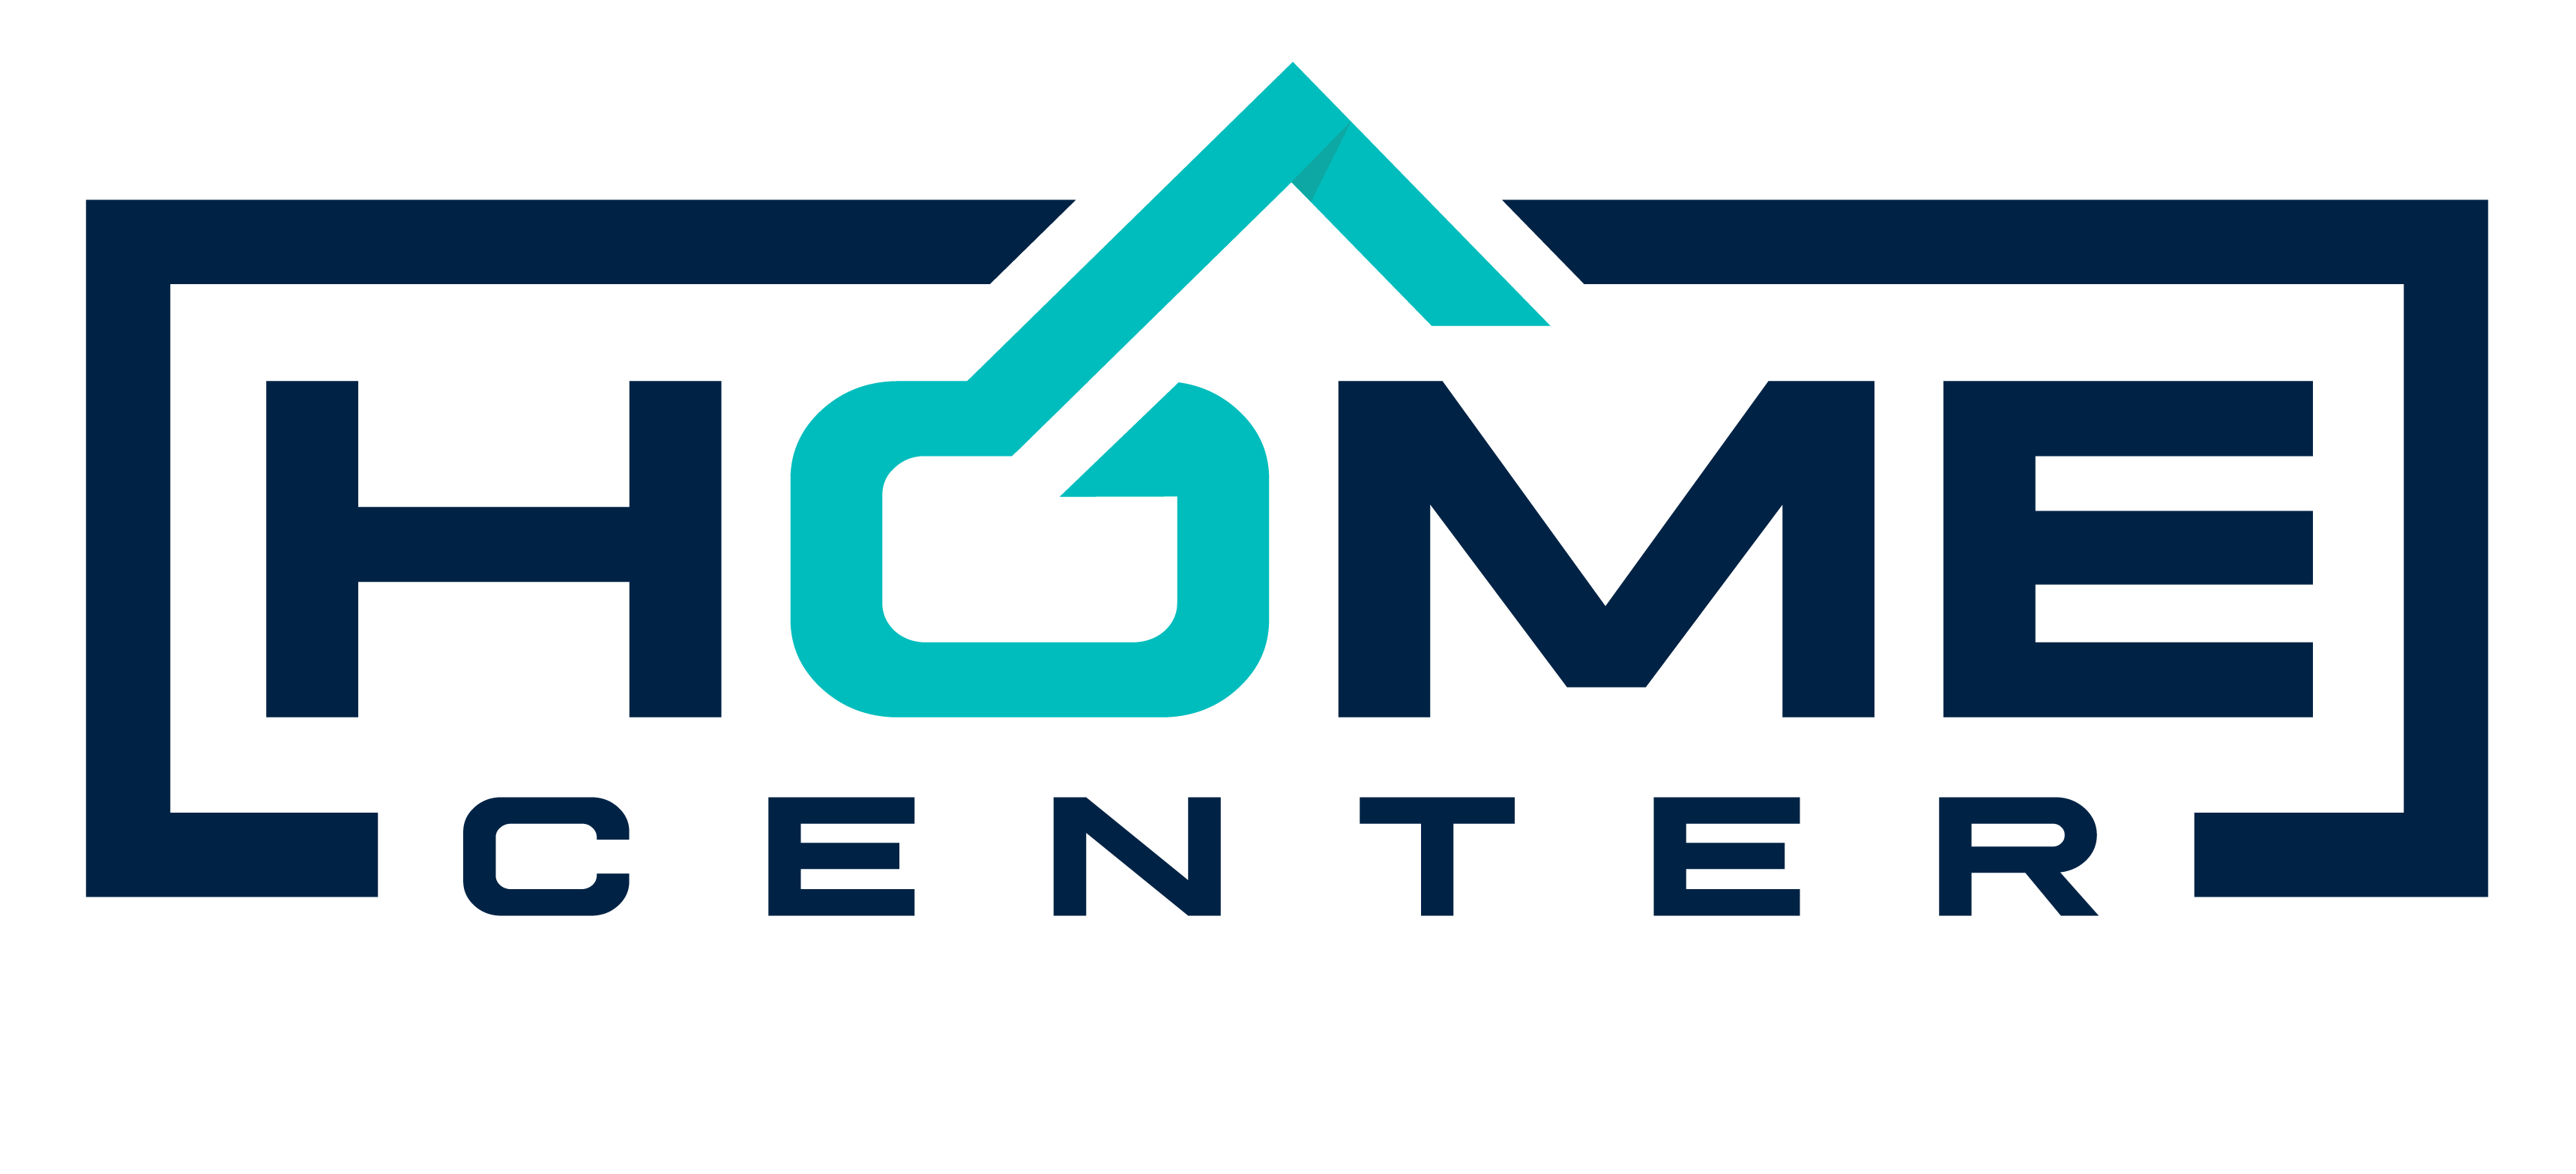 The Home Center company logo